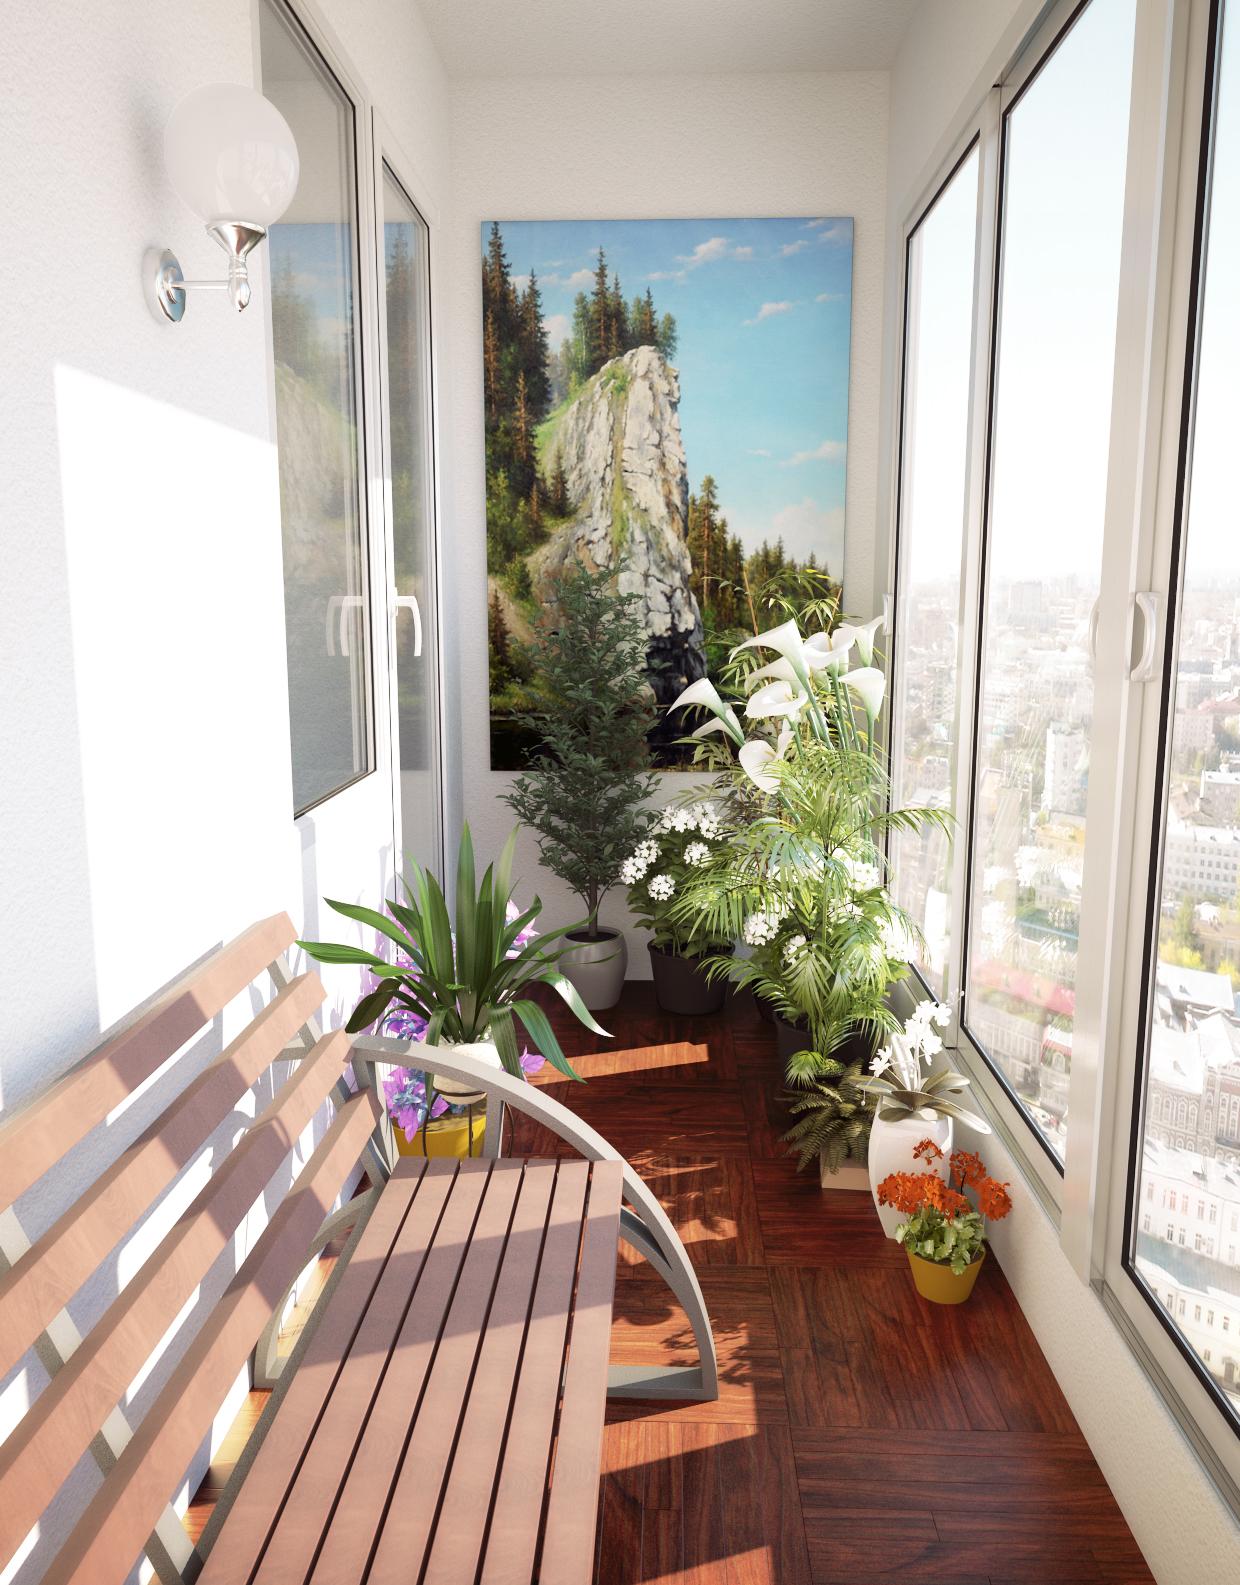 Также балкон может стать прекрасным местом для расслабления